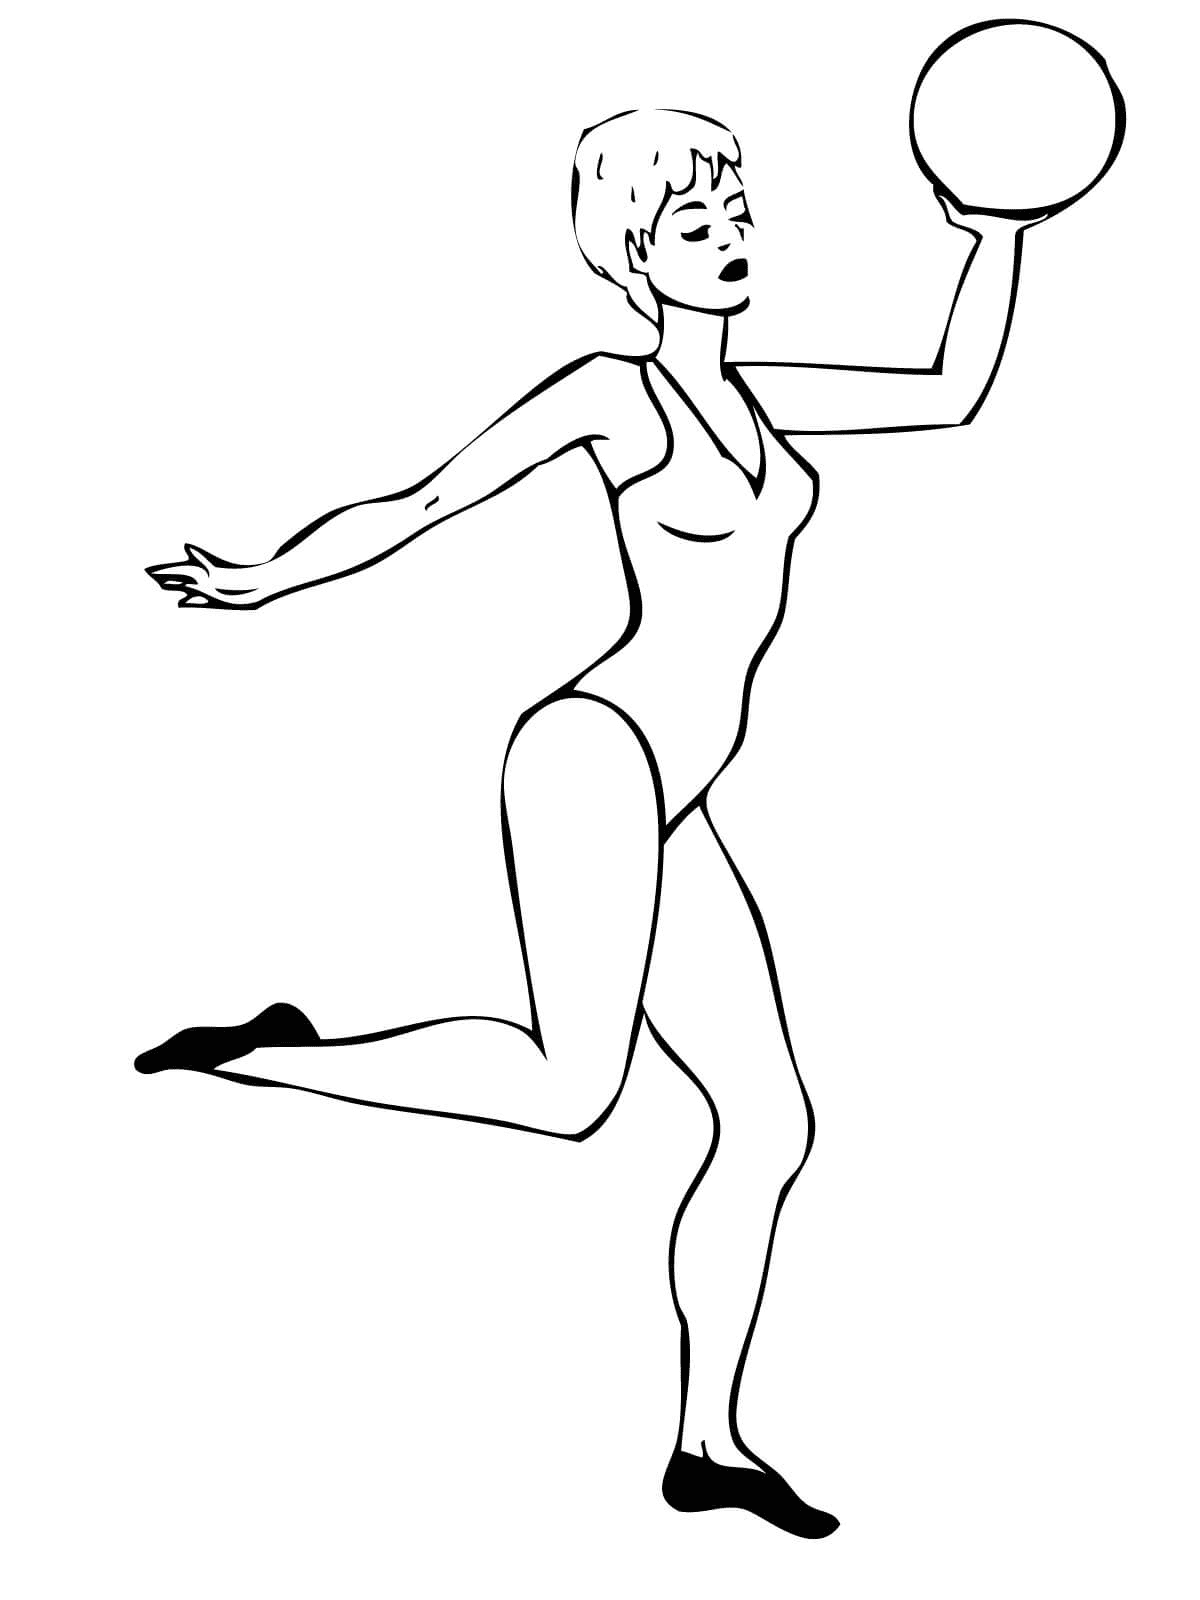 Página para colorear de gimnasta rítmica actuando con una pelota